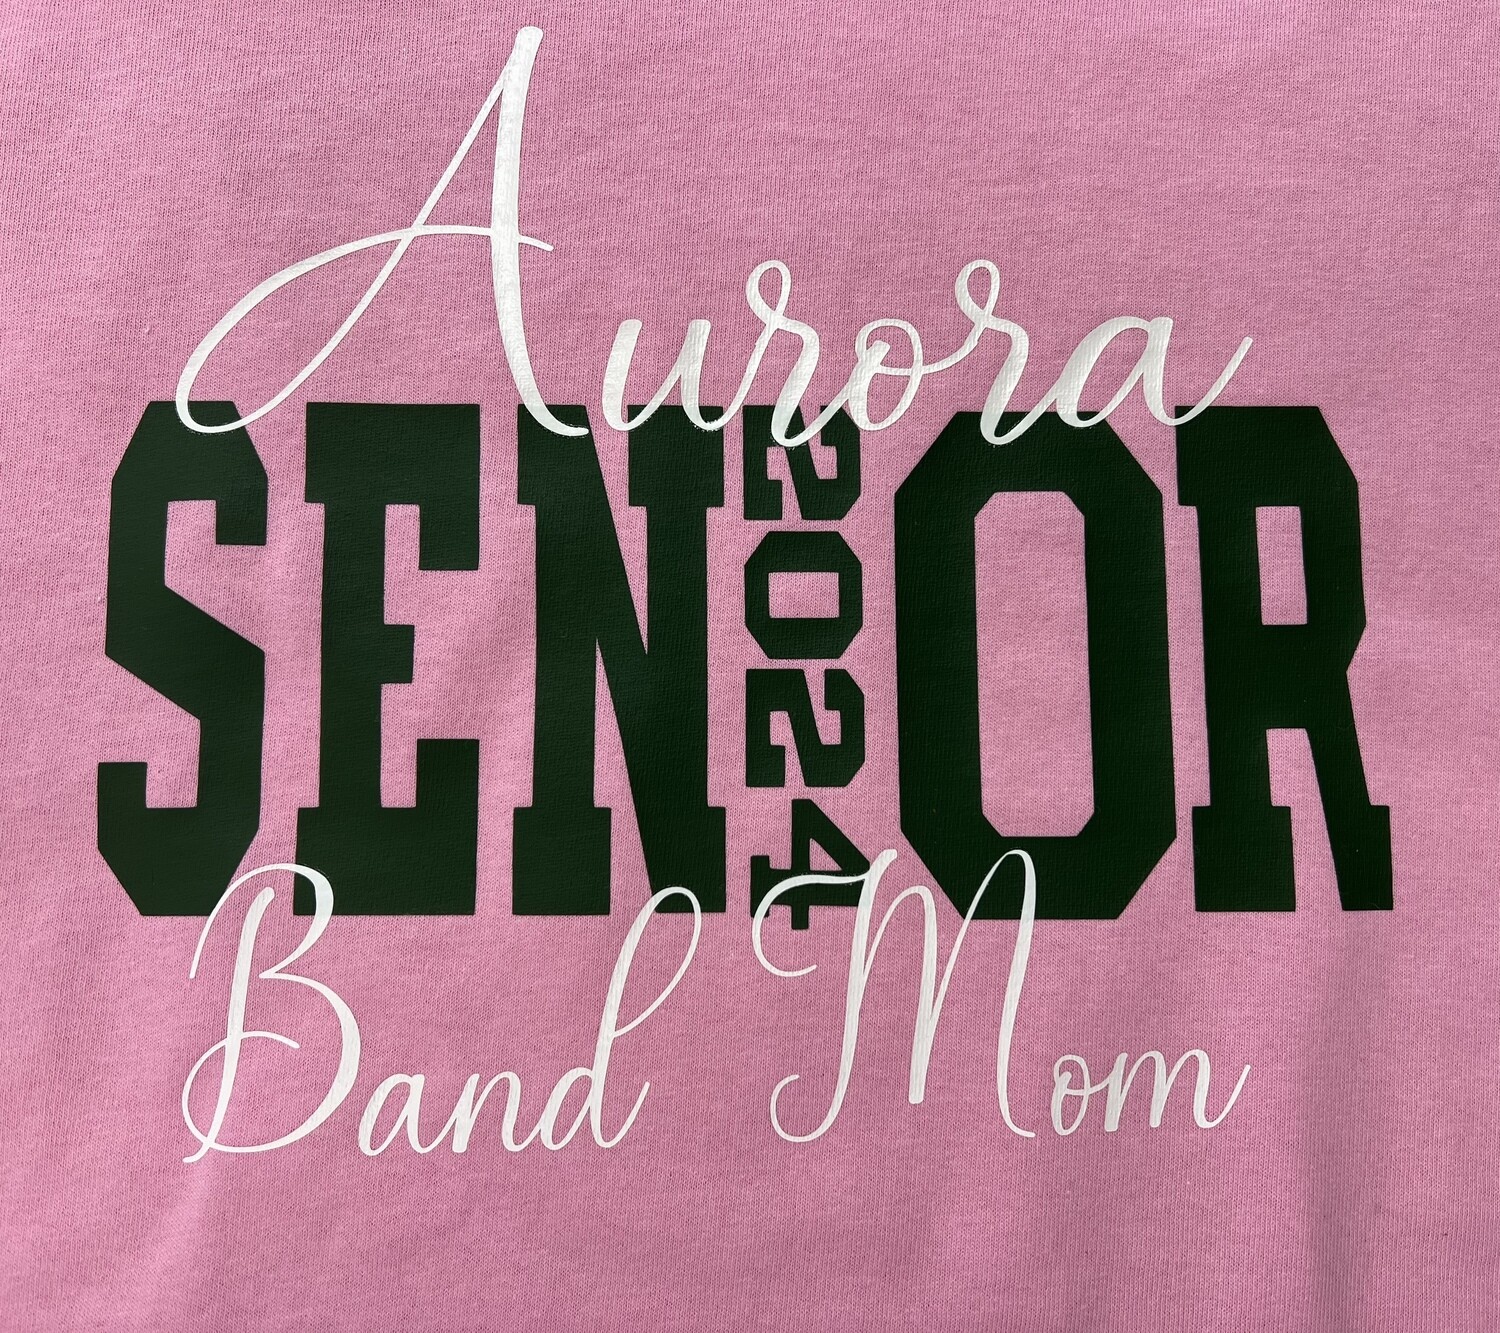 Senior Band Parent Shirt